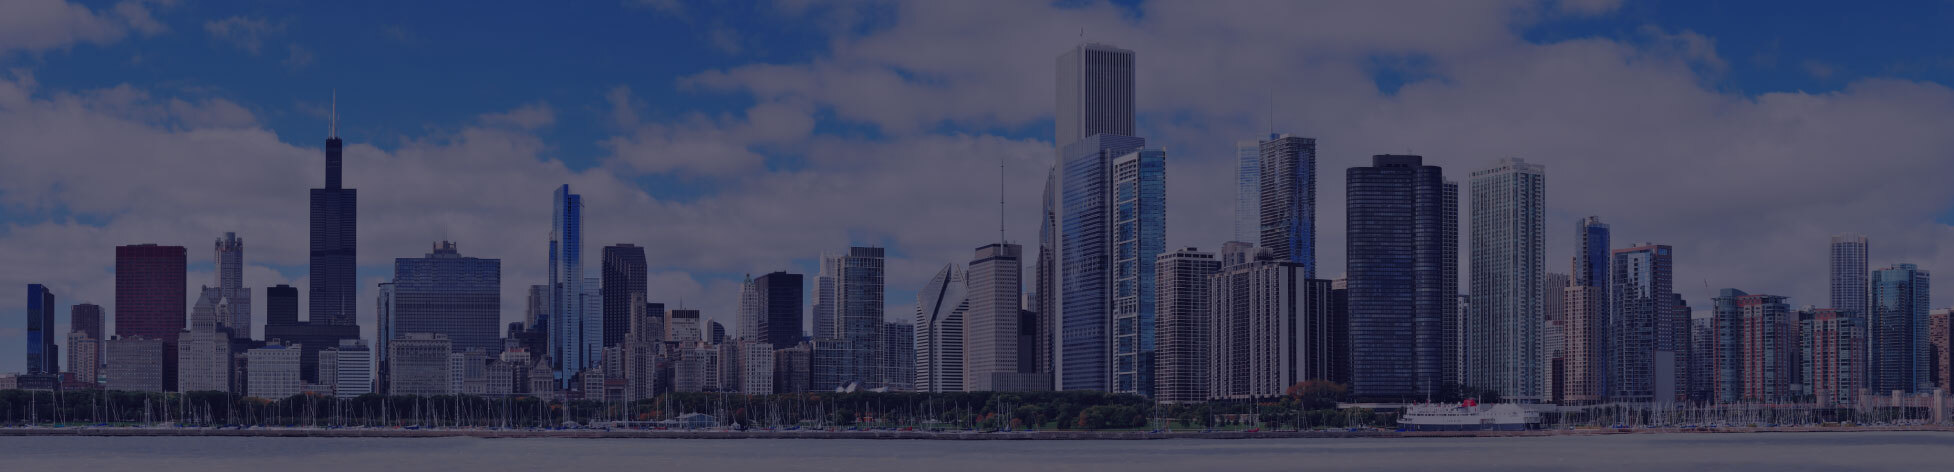 芝加哥城市风貌